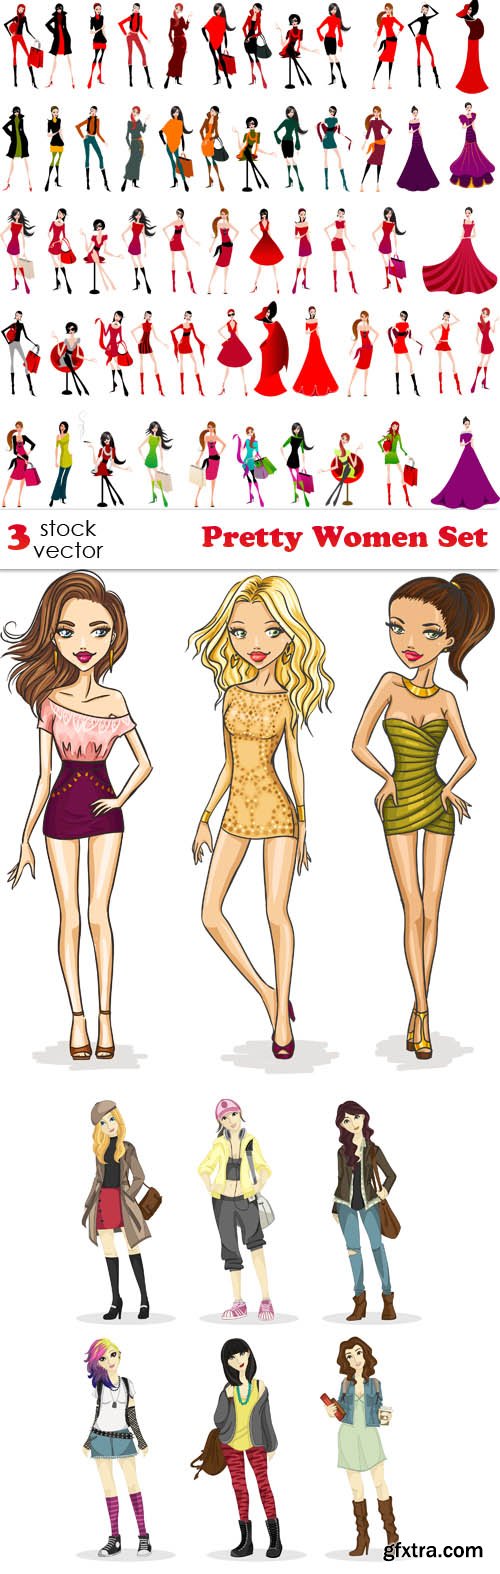 Vectors - Pretty Women Set